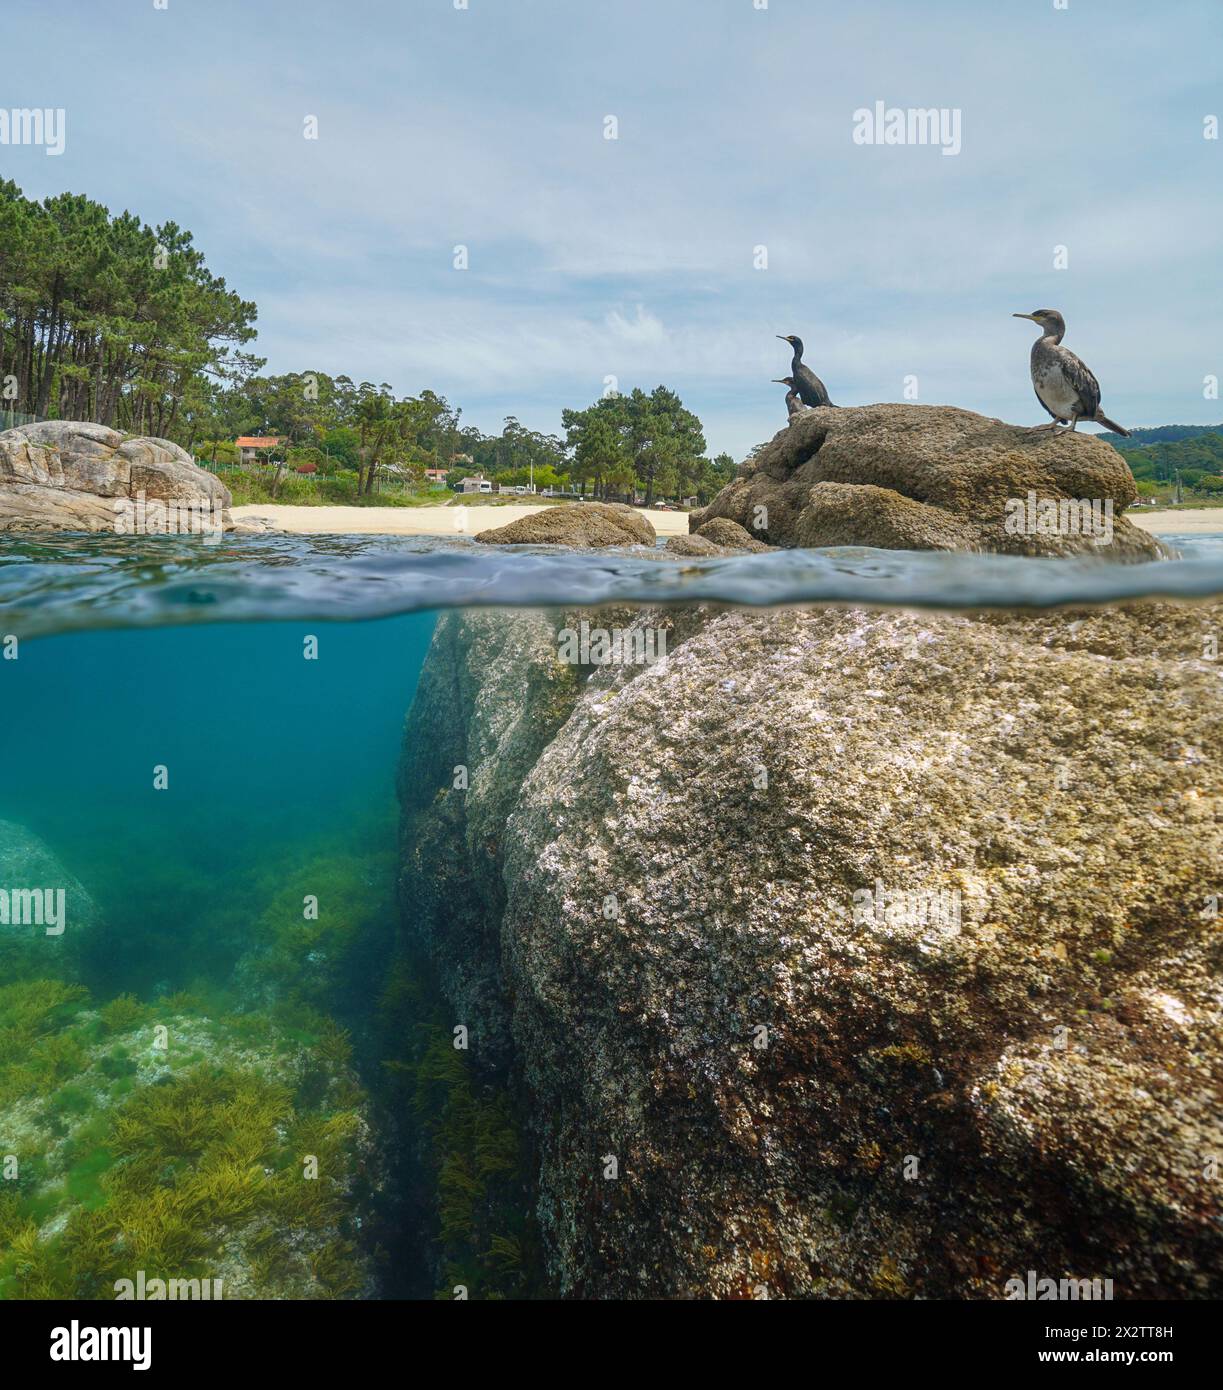 Côte de l'océan Atlantique en Espagne avec des oiseaux cormorans sur un rocher, vue partagée sur et sous la surface de l'eau, scène naturelle, Galice, Rias Baixas Banque D'Images